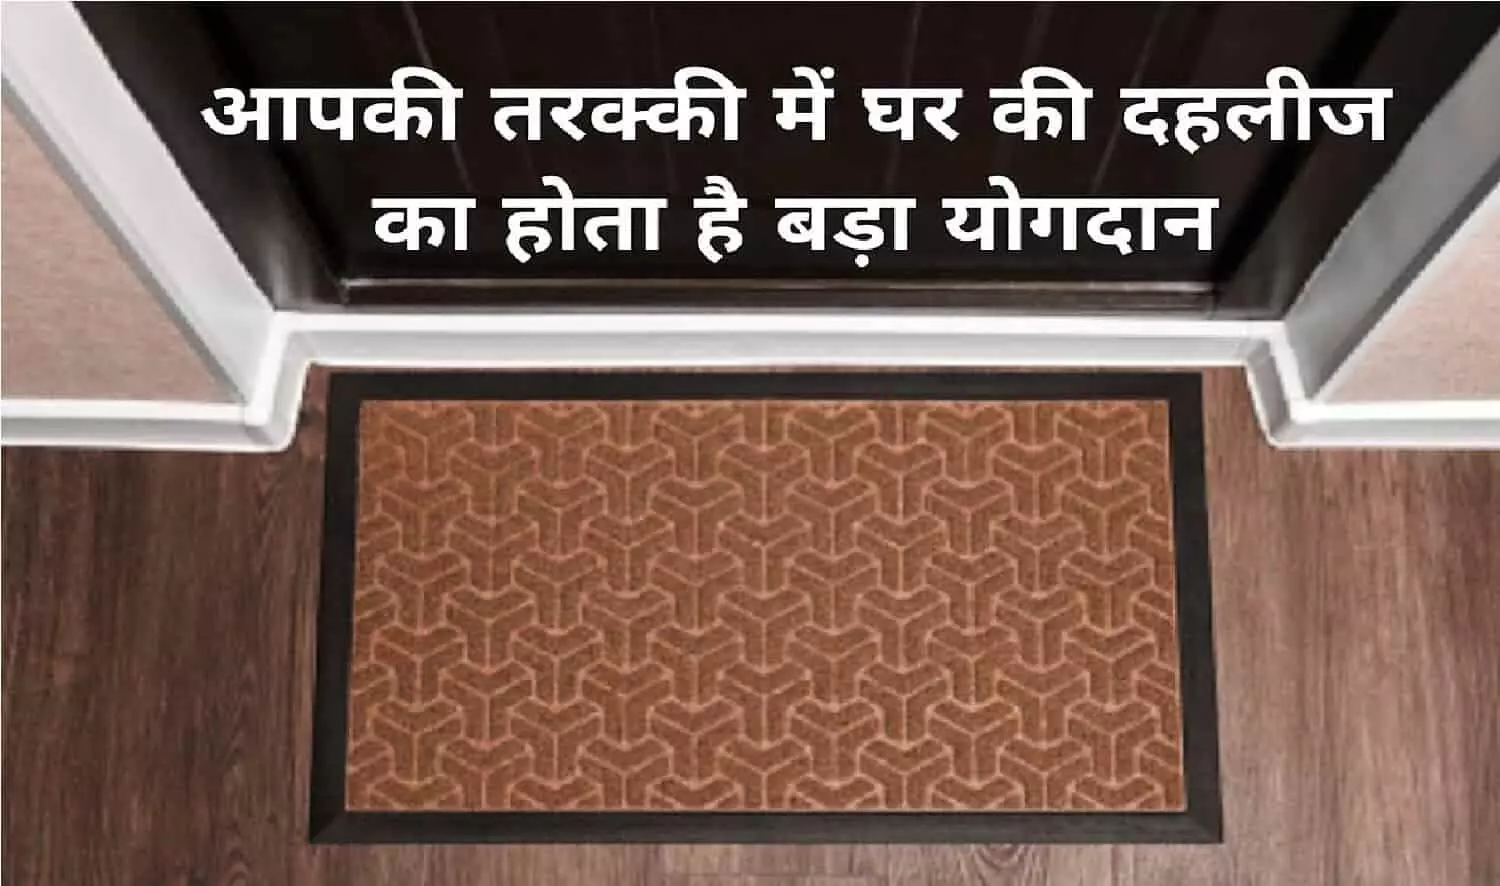 Vastu Tips For Threshold: अगर आपके घर में ऐसी है दहलीज तो आपको तरक्की करने से कोई नहीं रोक सकता है